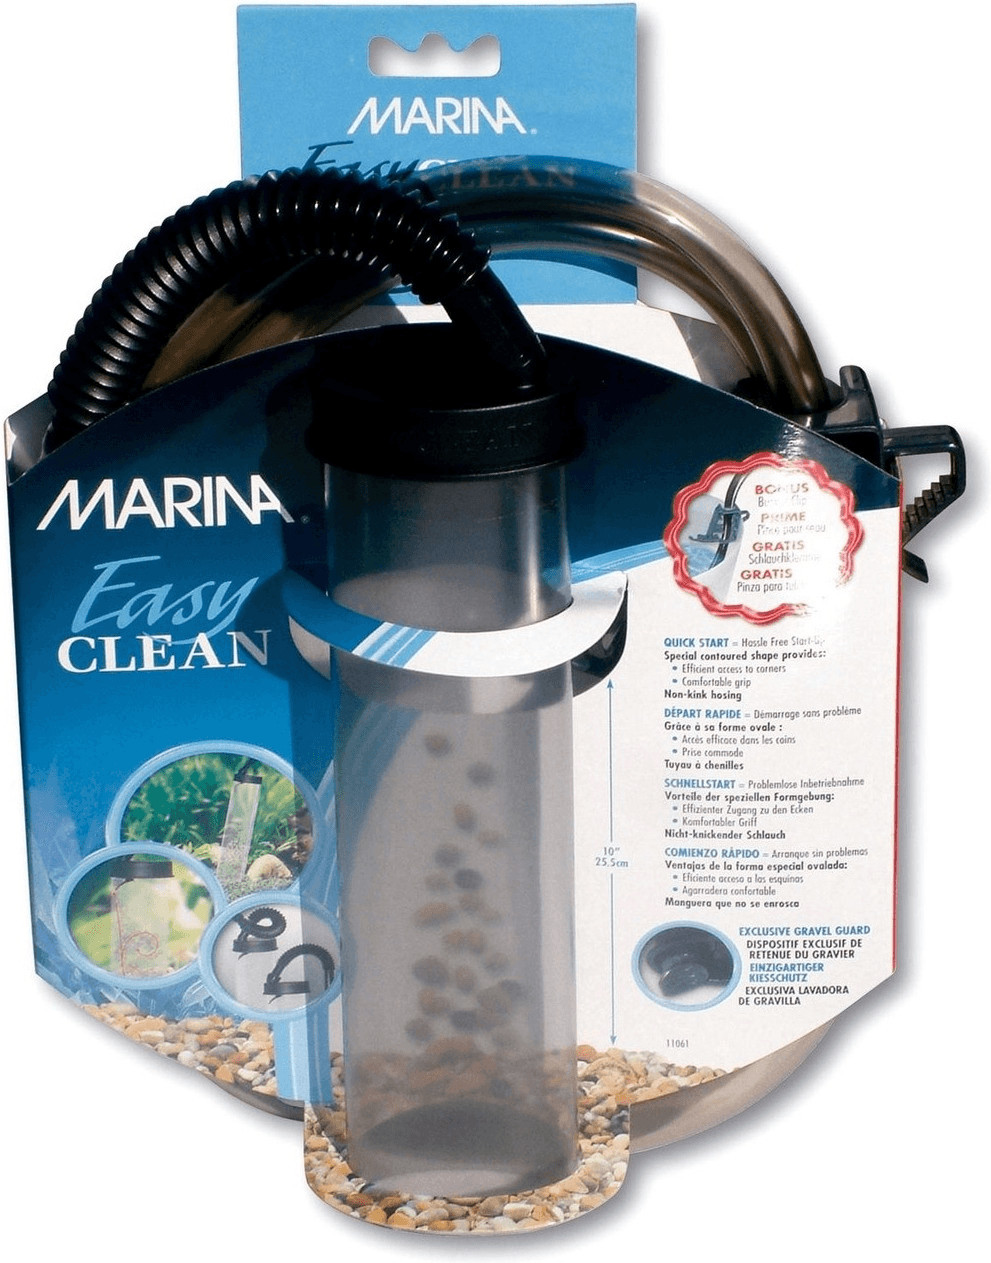 Marina Easy Clean Nettoyeur de gravier au meilleur prix sur